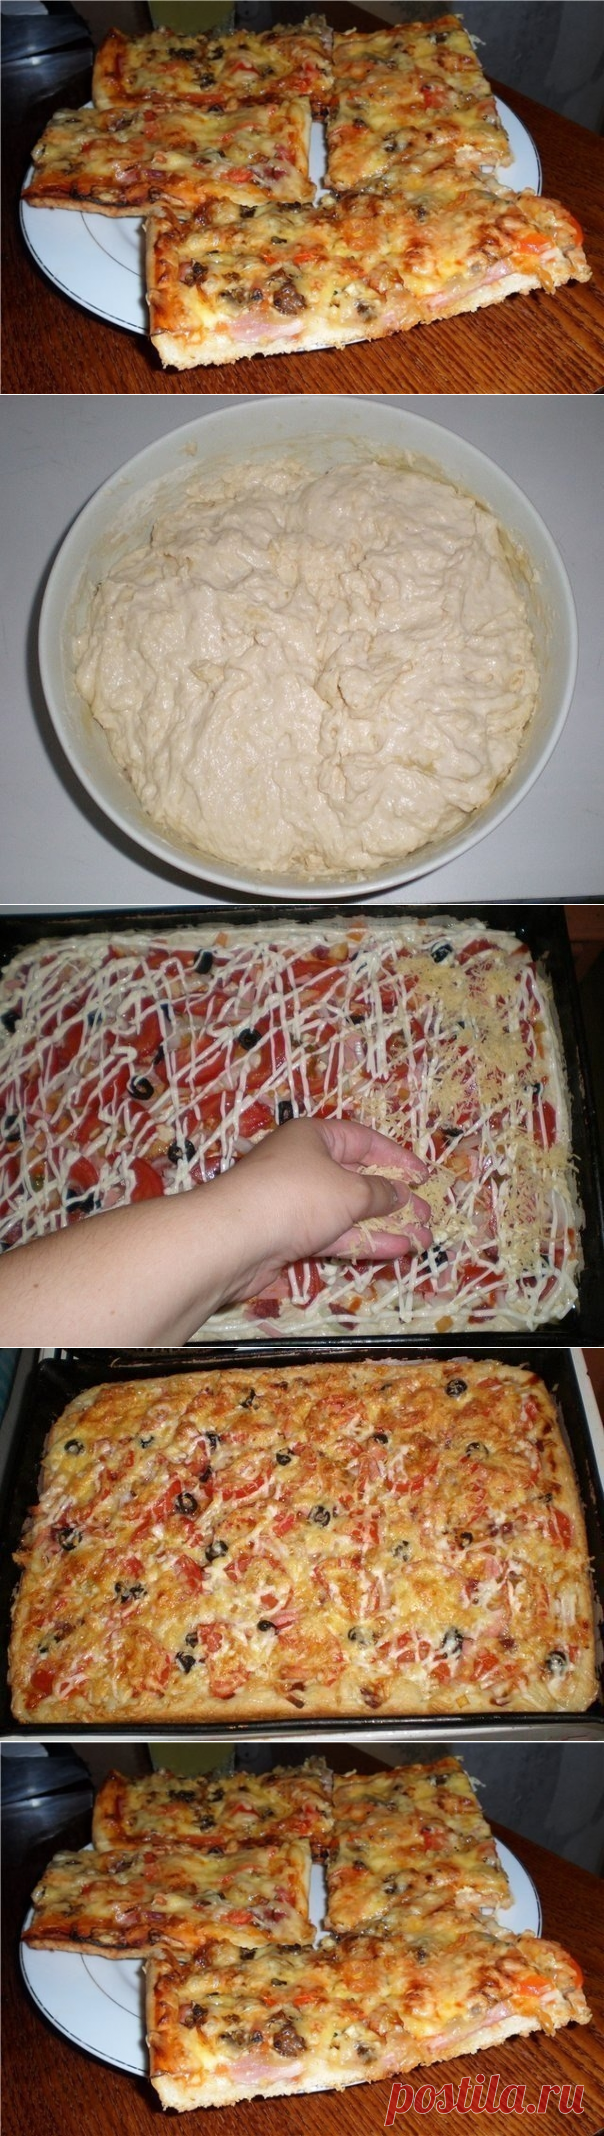 рецепт пиццы четыре сыра в домашних условиях в духовке с фото пошагово фото 73